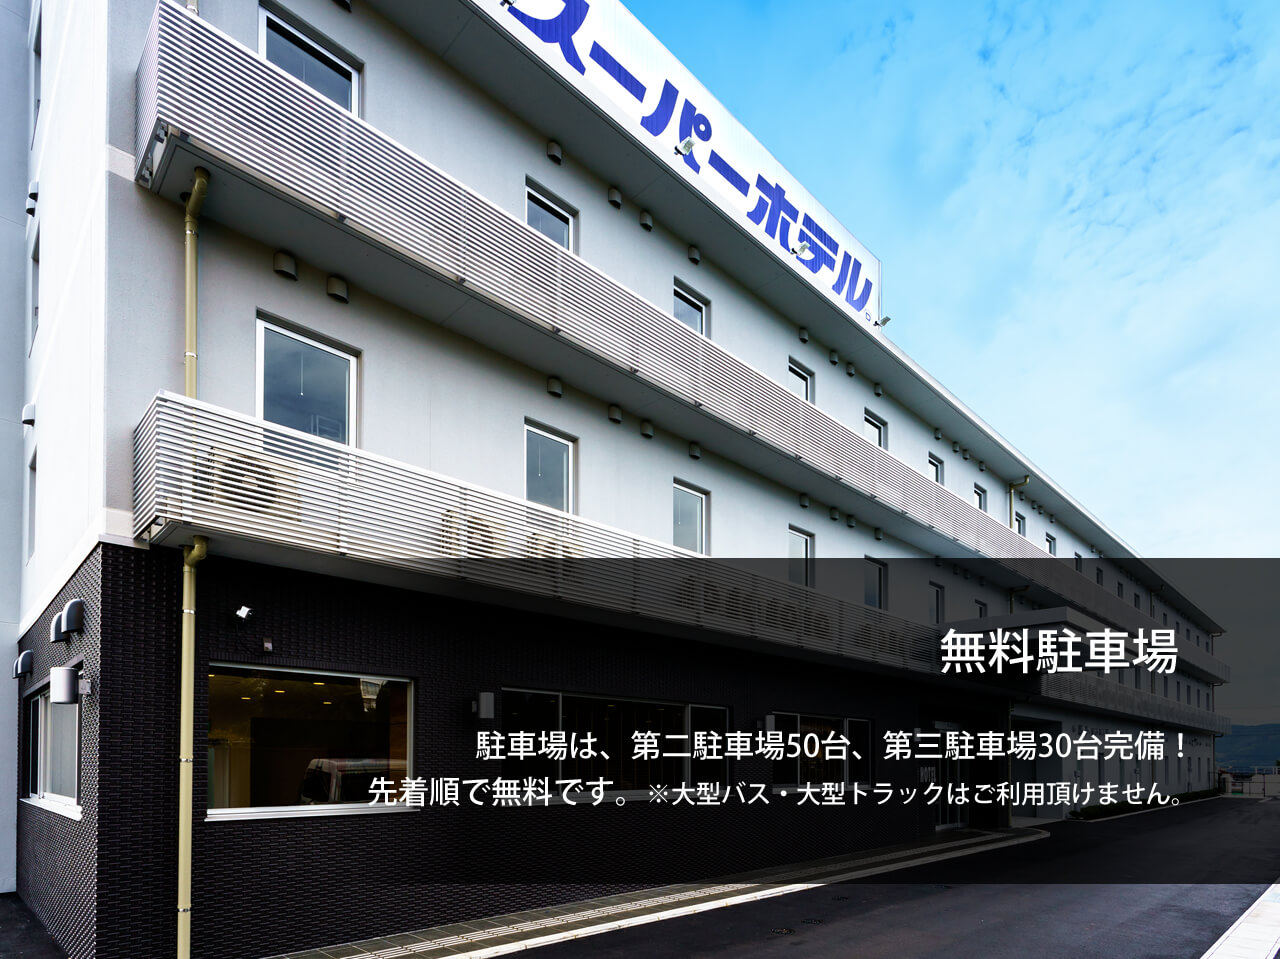 公式最安 スーパーホテル富士宮 静岡県富士宮市のビジネスホテル